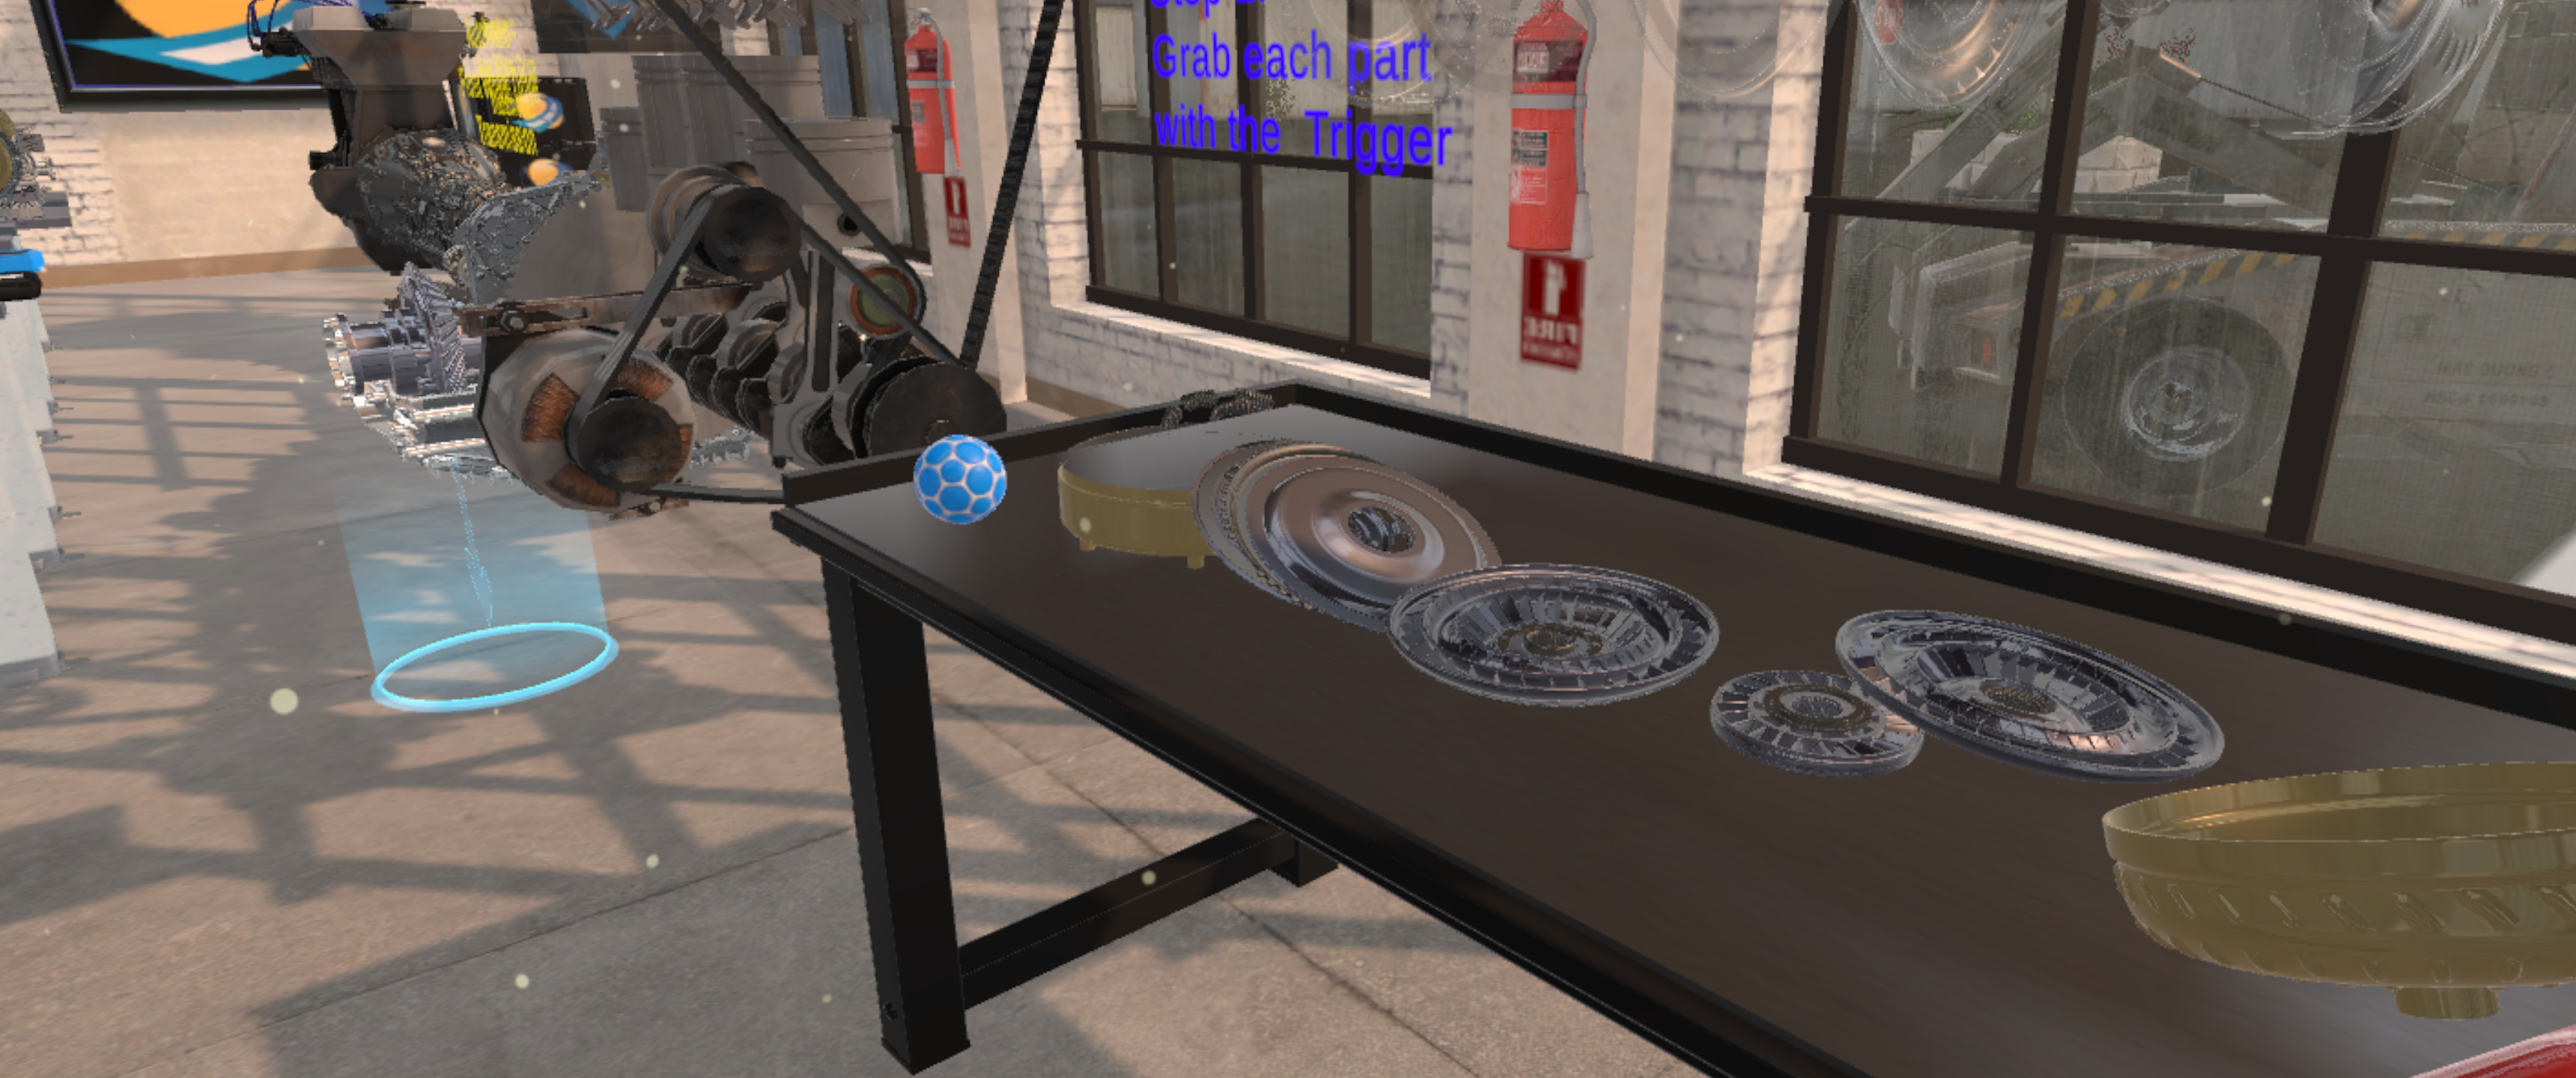 Basic Car Repair Garage VR screenshot